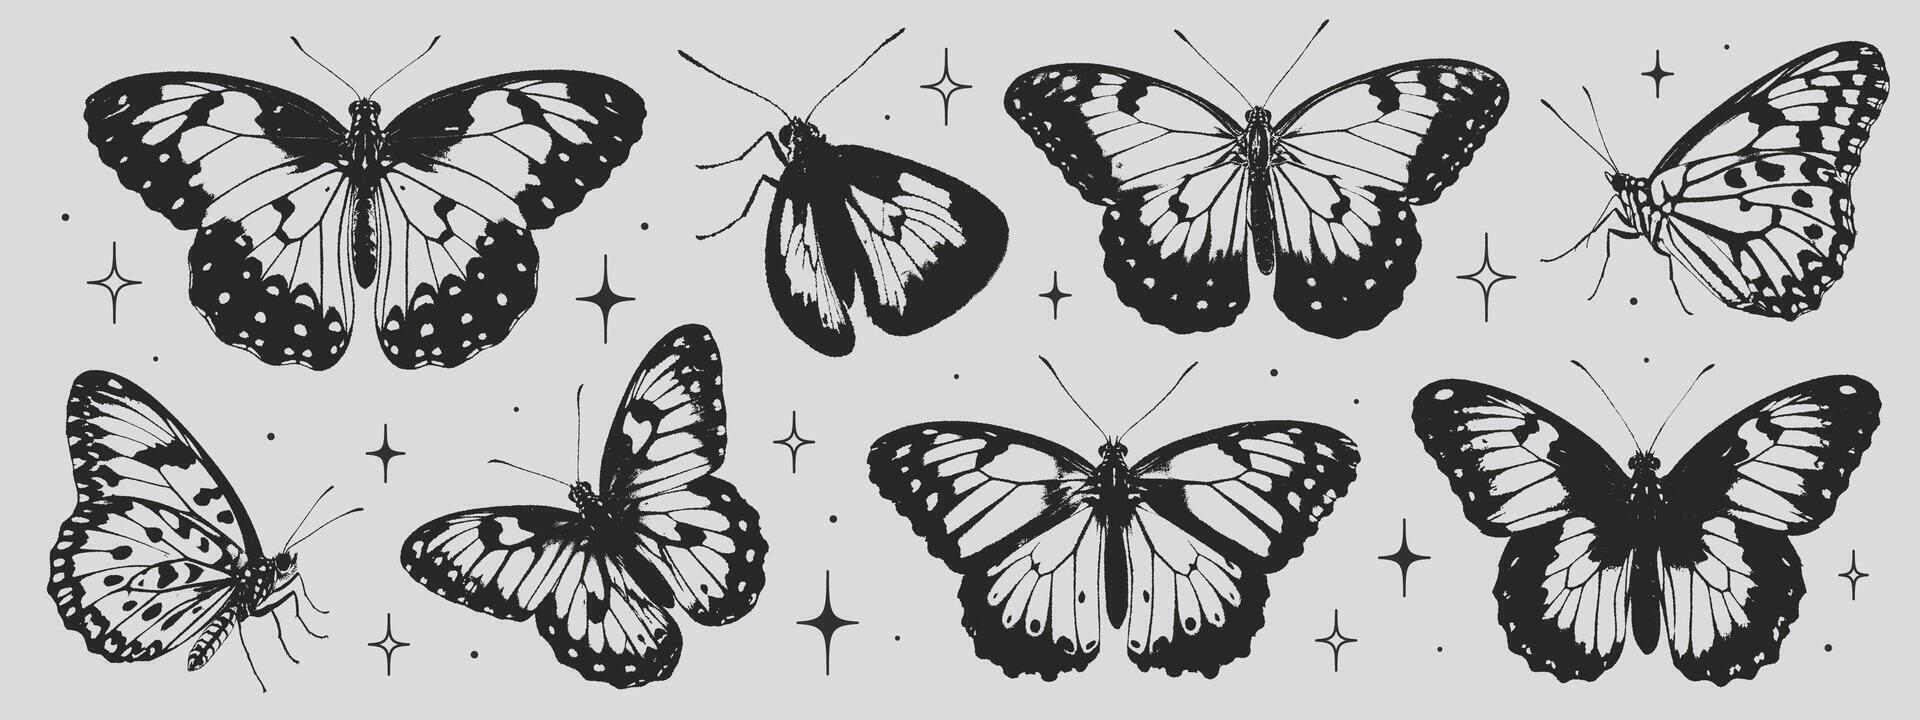 Schmetterlinge Sammlung im das Stil von Grunge Briefmarke und organisch Formen. Vektor Grafik im modisch retro 2000er Stil. y2k ästhetisch, tätowieren Silhouette, Hand gezeichnet Aufkleber. Korn Textur Schmetterling